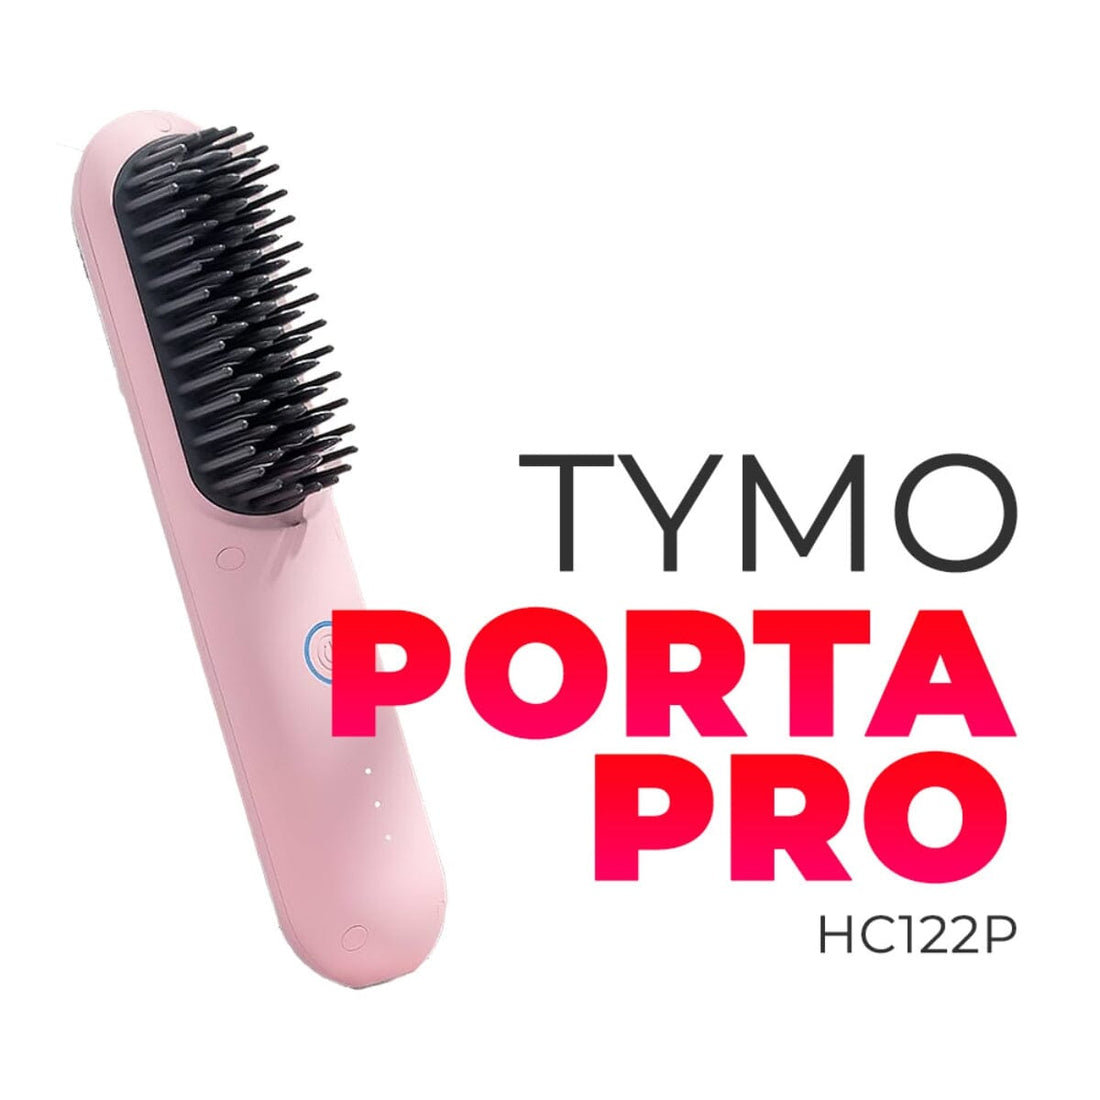 Tymo (Plus) Hair Straightener Brush Review % - Pretty Honest Reviews